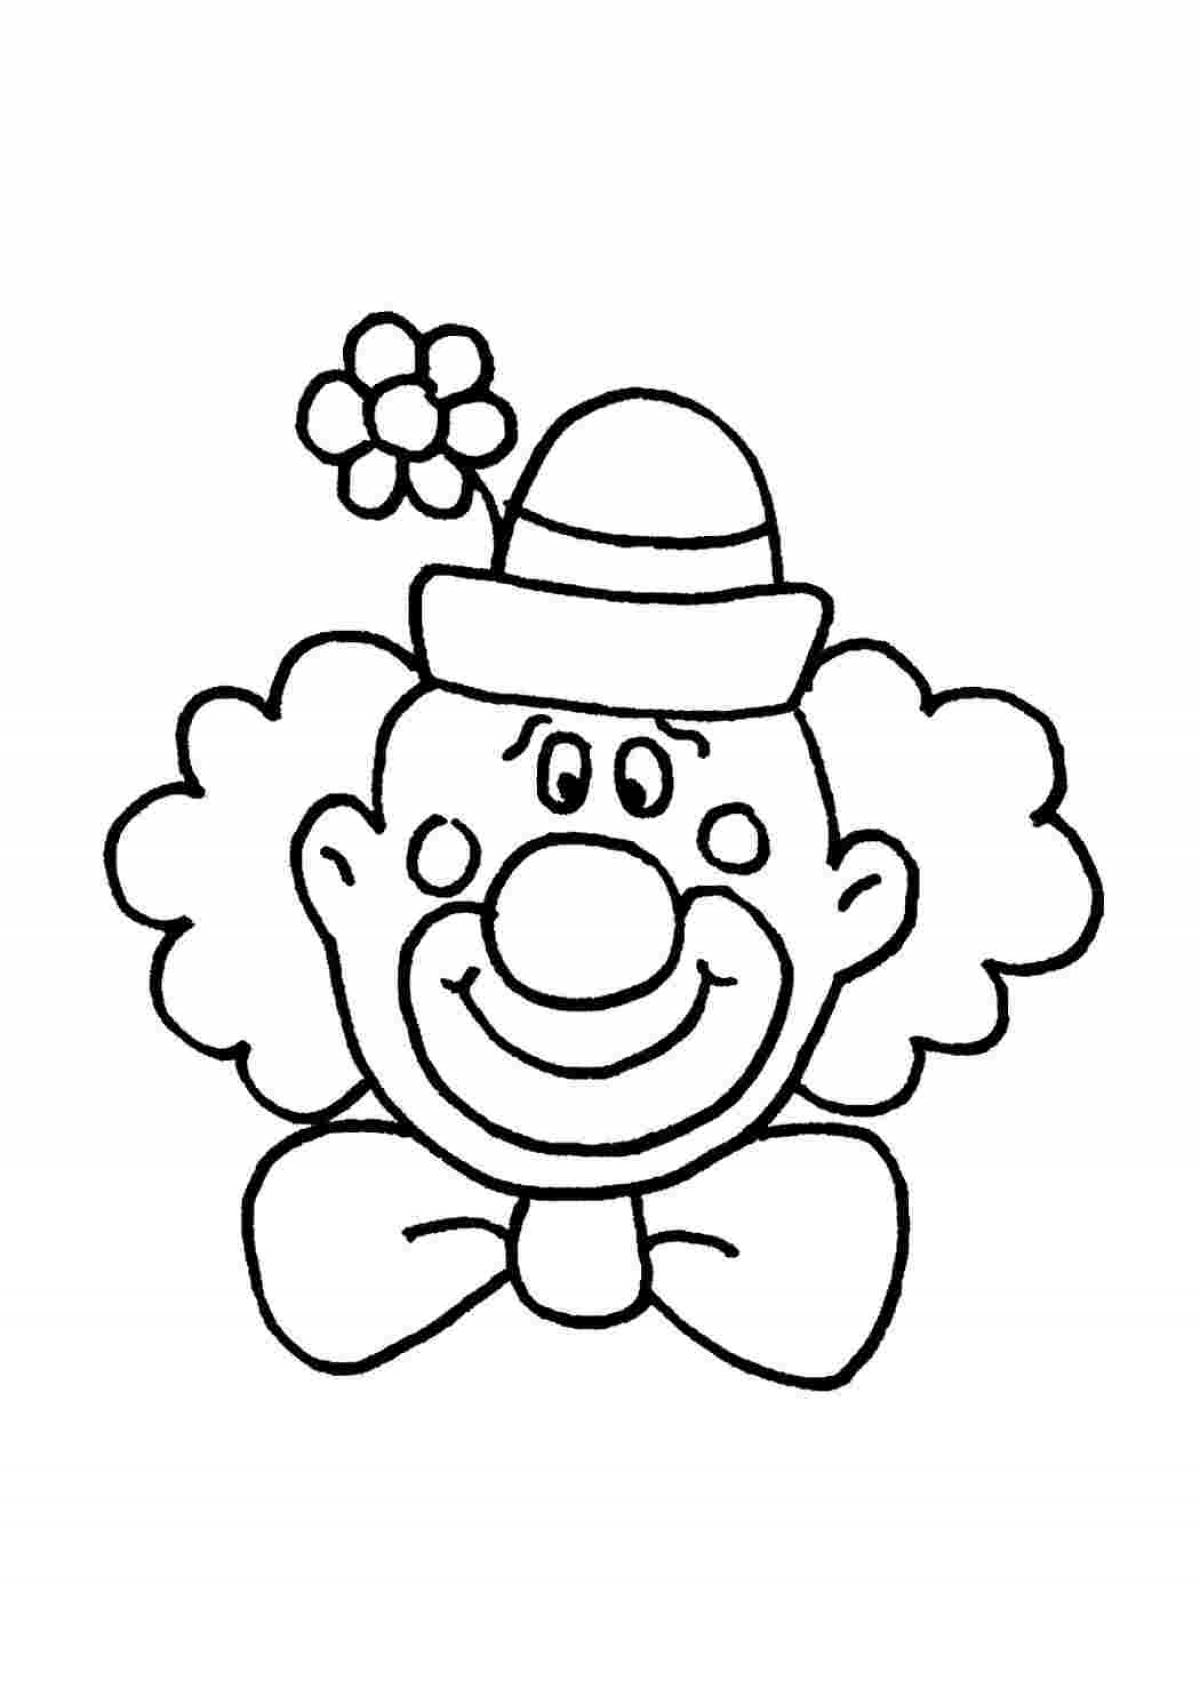 Клоун раскраска для детей 4 5 лет. Клоун раскраска. Клоун раскраска для малышей. Клоун раскраска для детей. Клоун для раскрашивания детям.